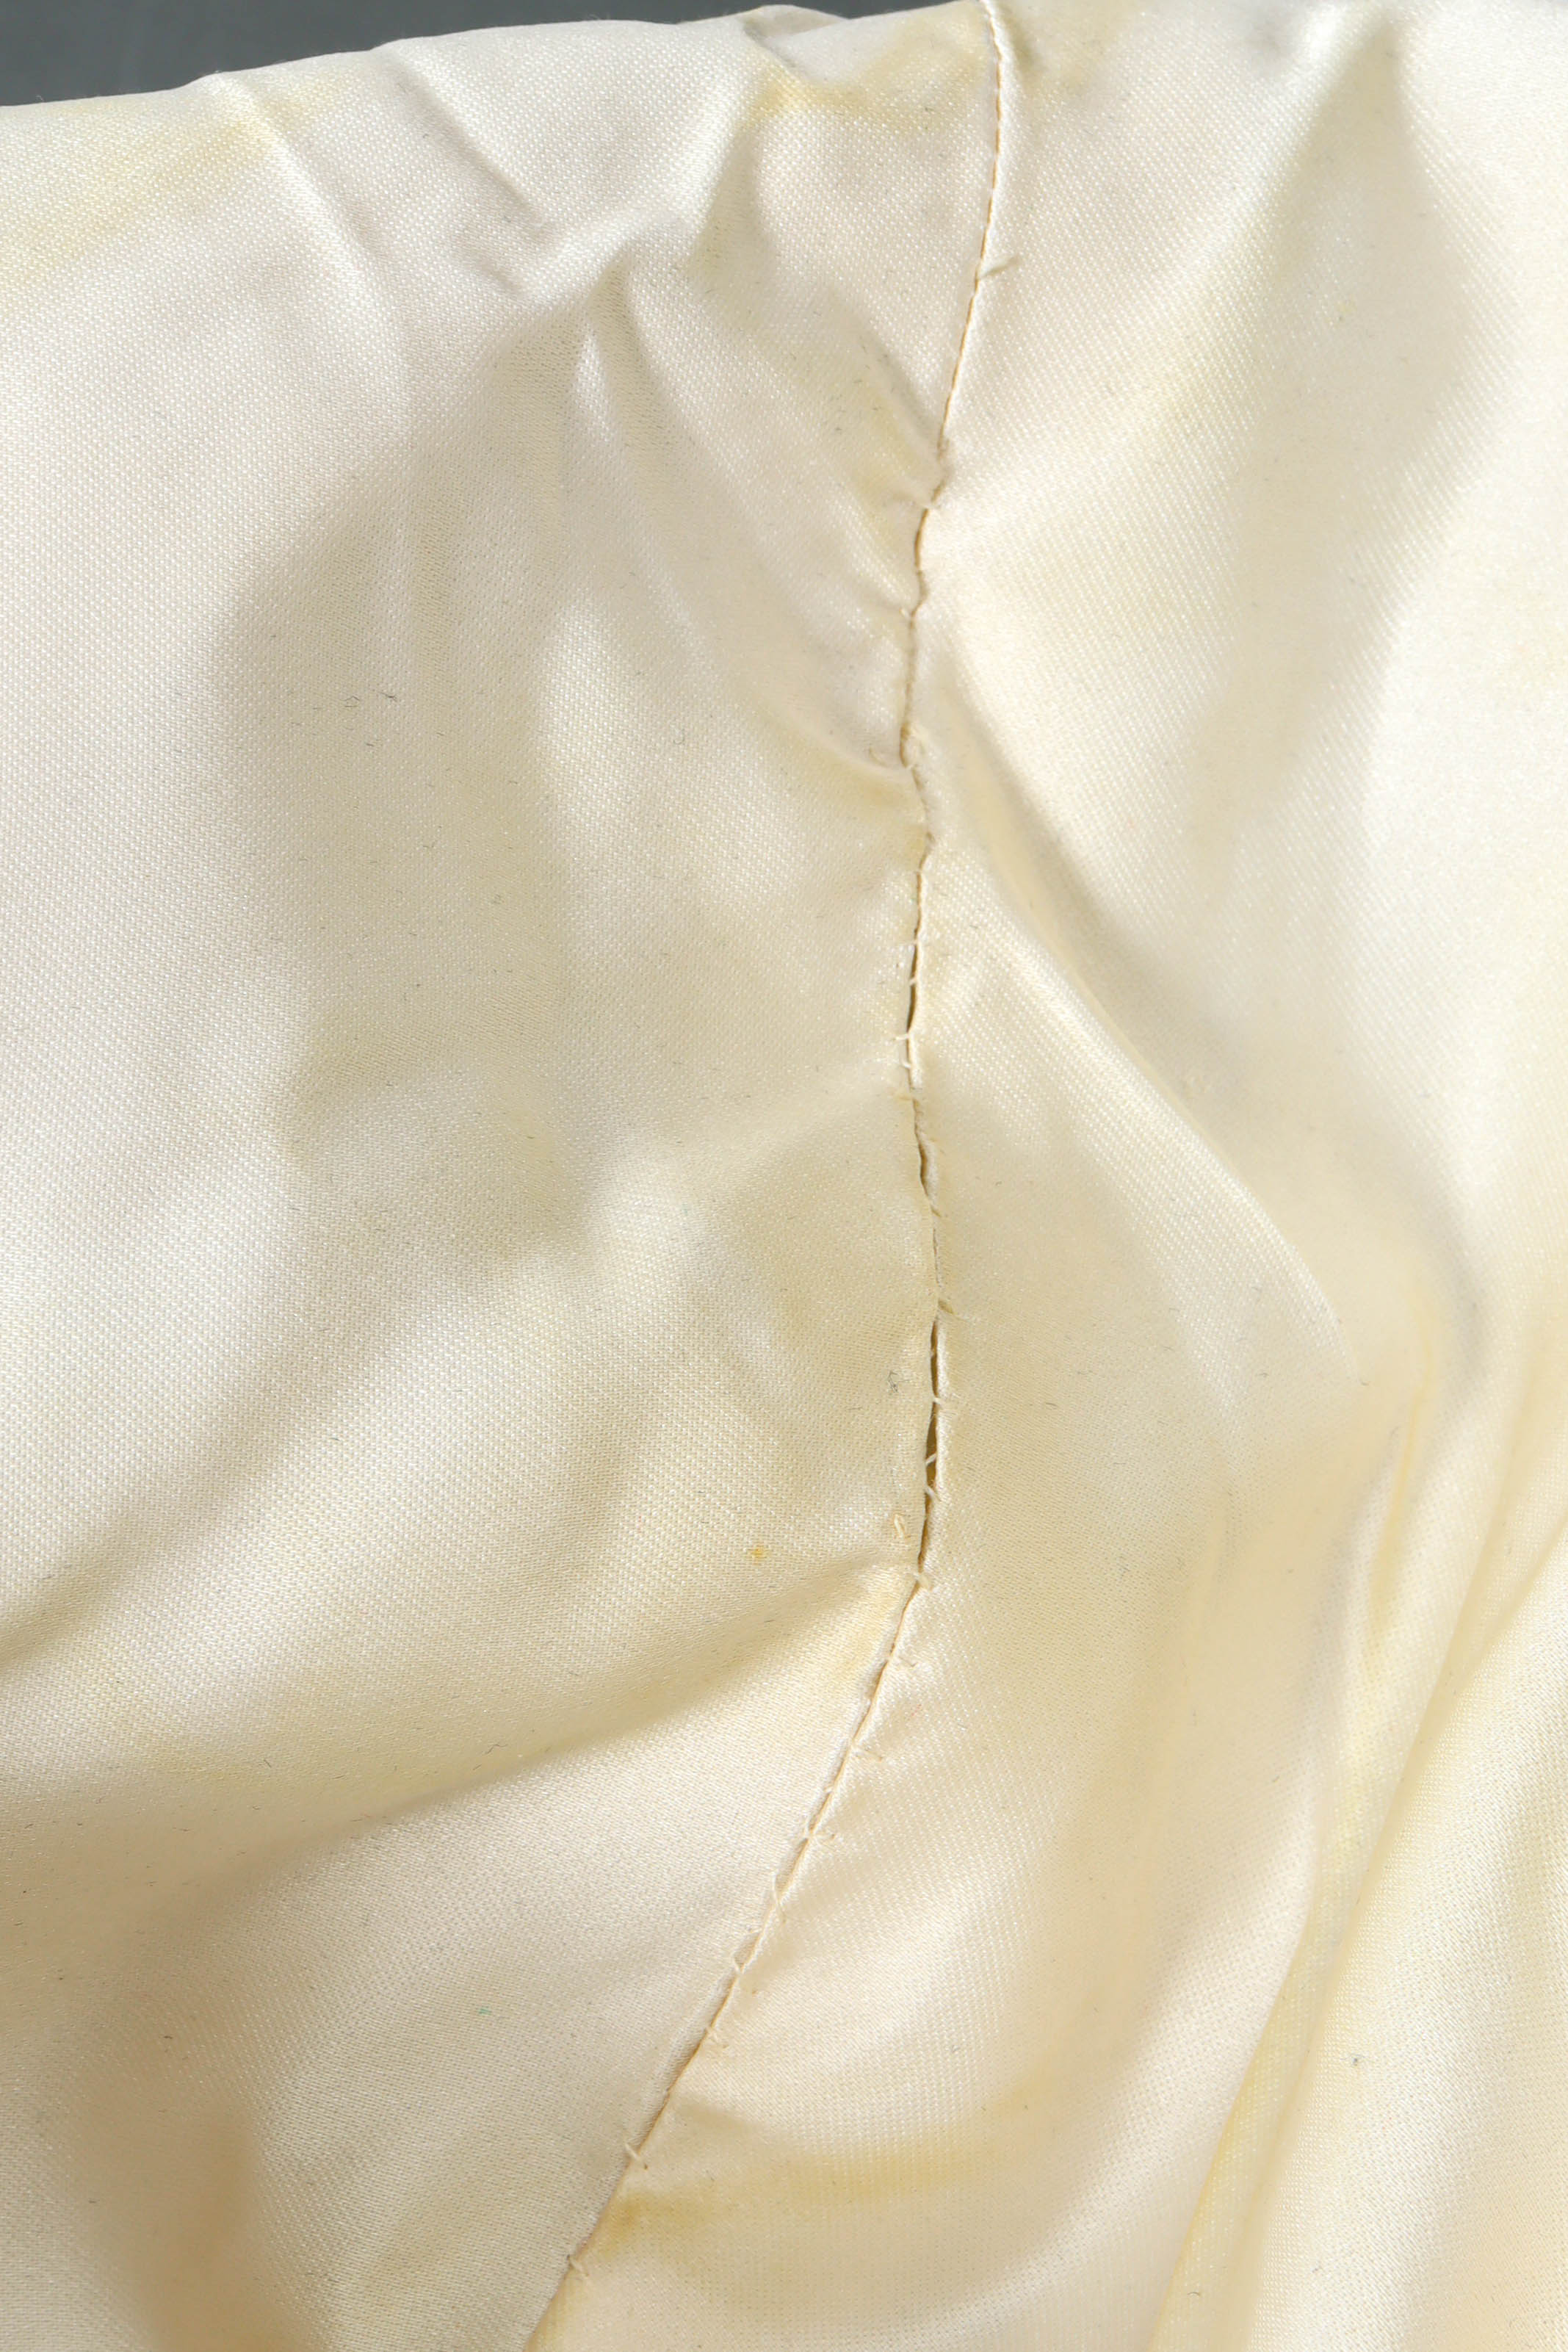 Vintage Scaasi Boutique Pearl Bolero Jacket inverse discoloration/L lining @ Recess LA